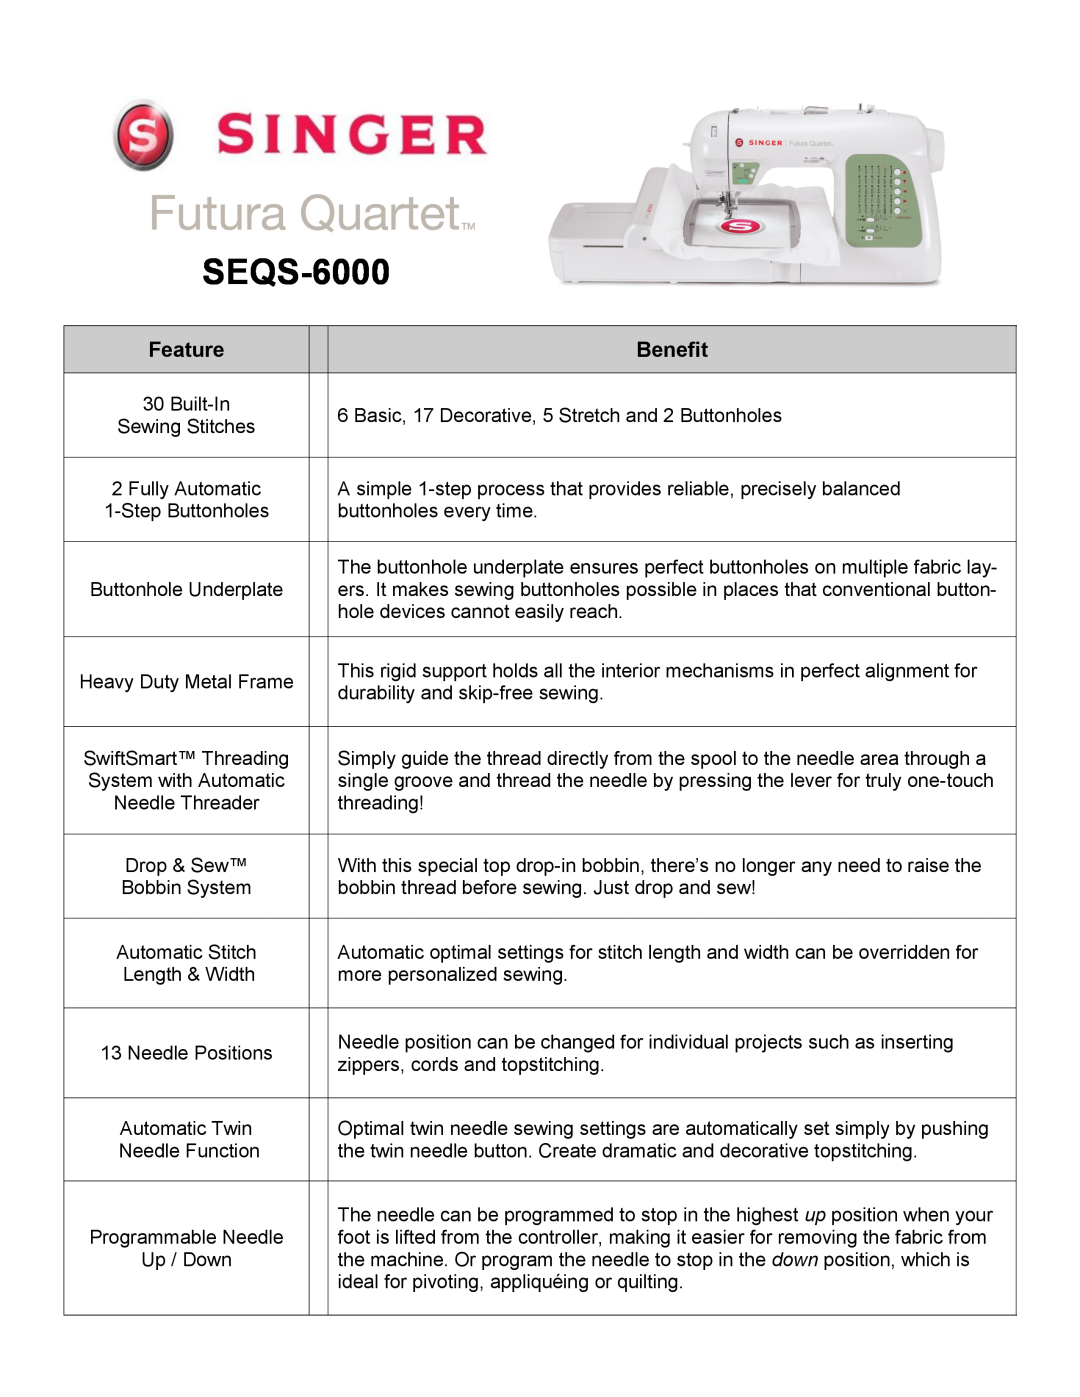 Singer SEQS-6000 manual Feature, Benefit 